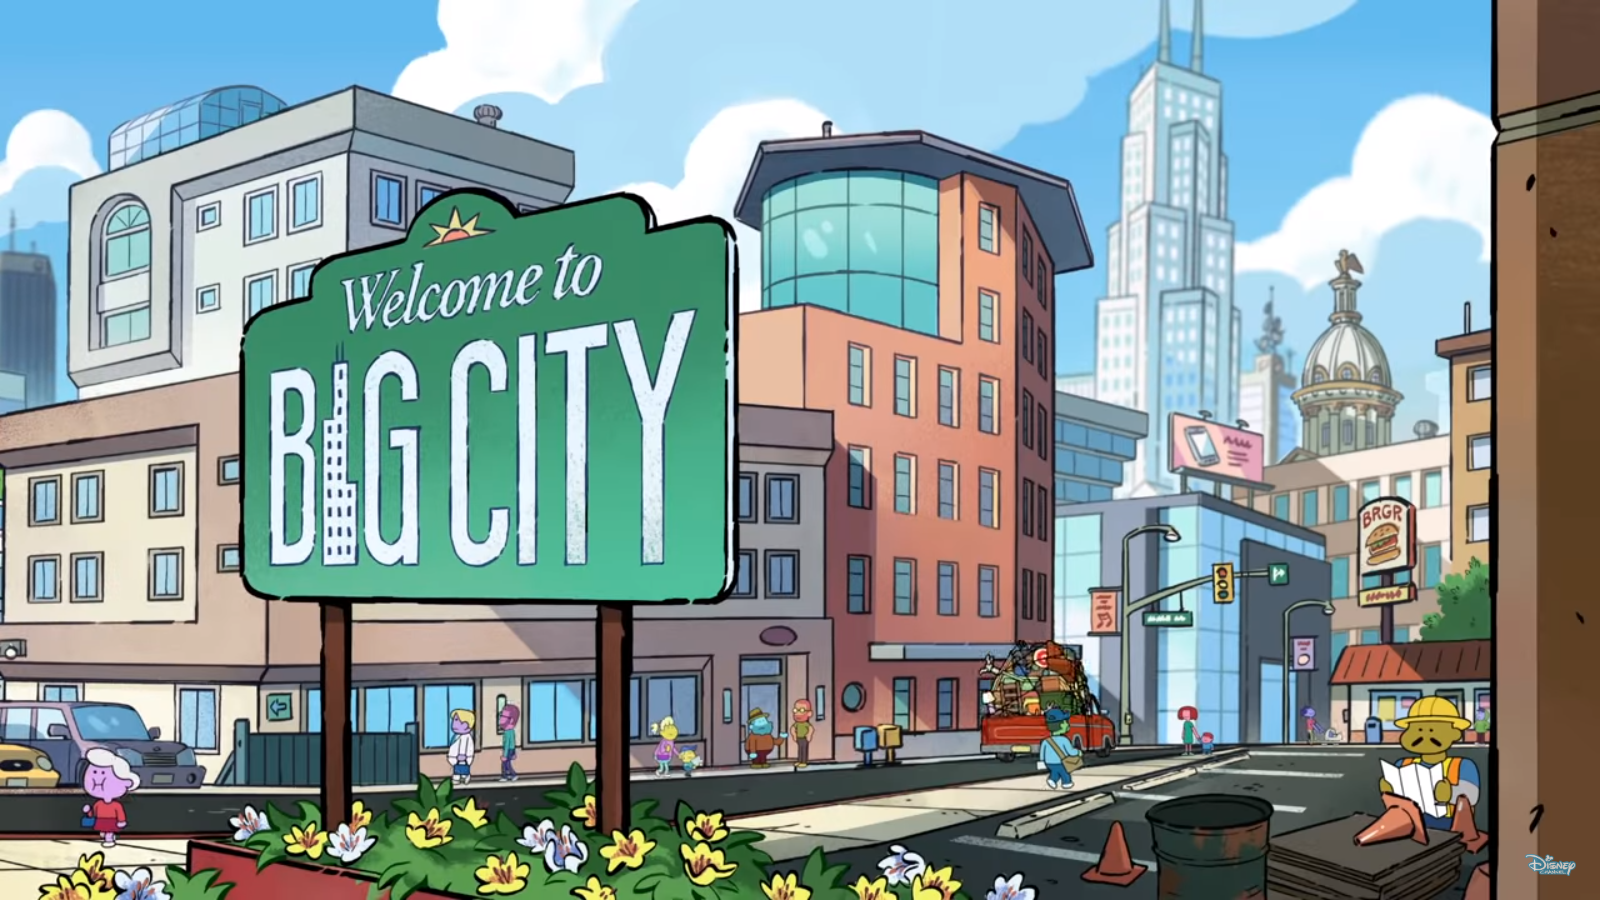 Big City | Disney Wiki | Fandom